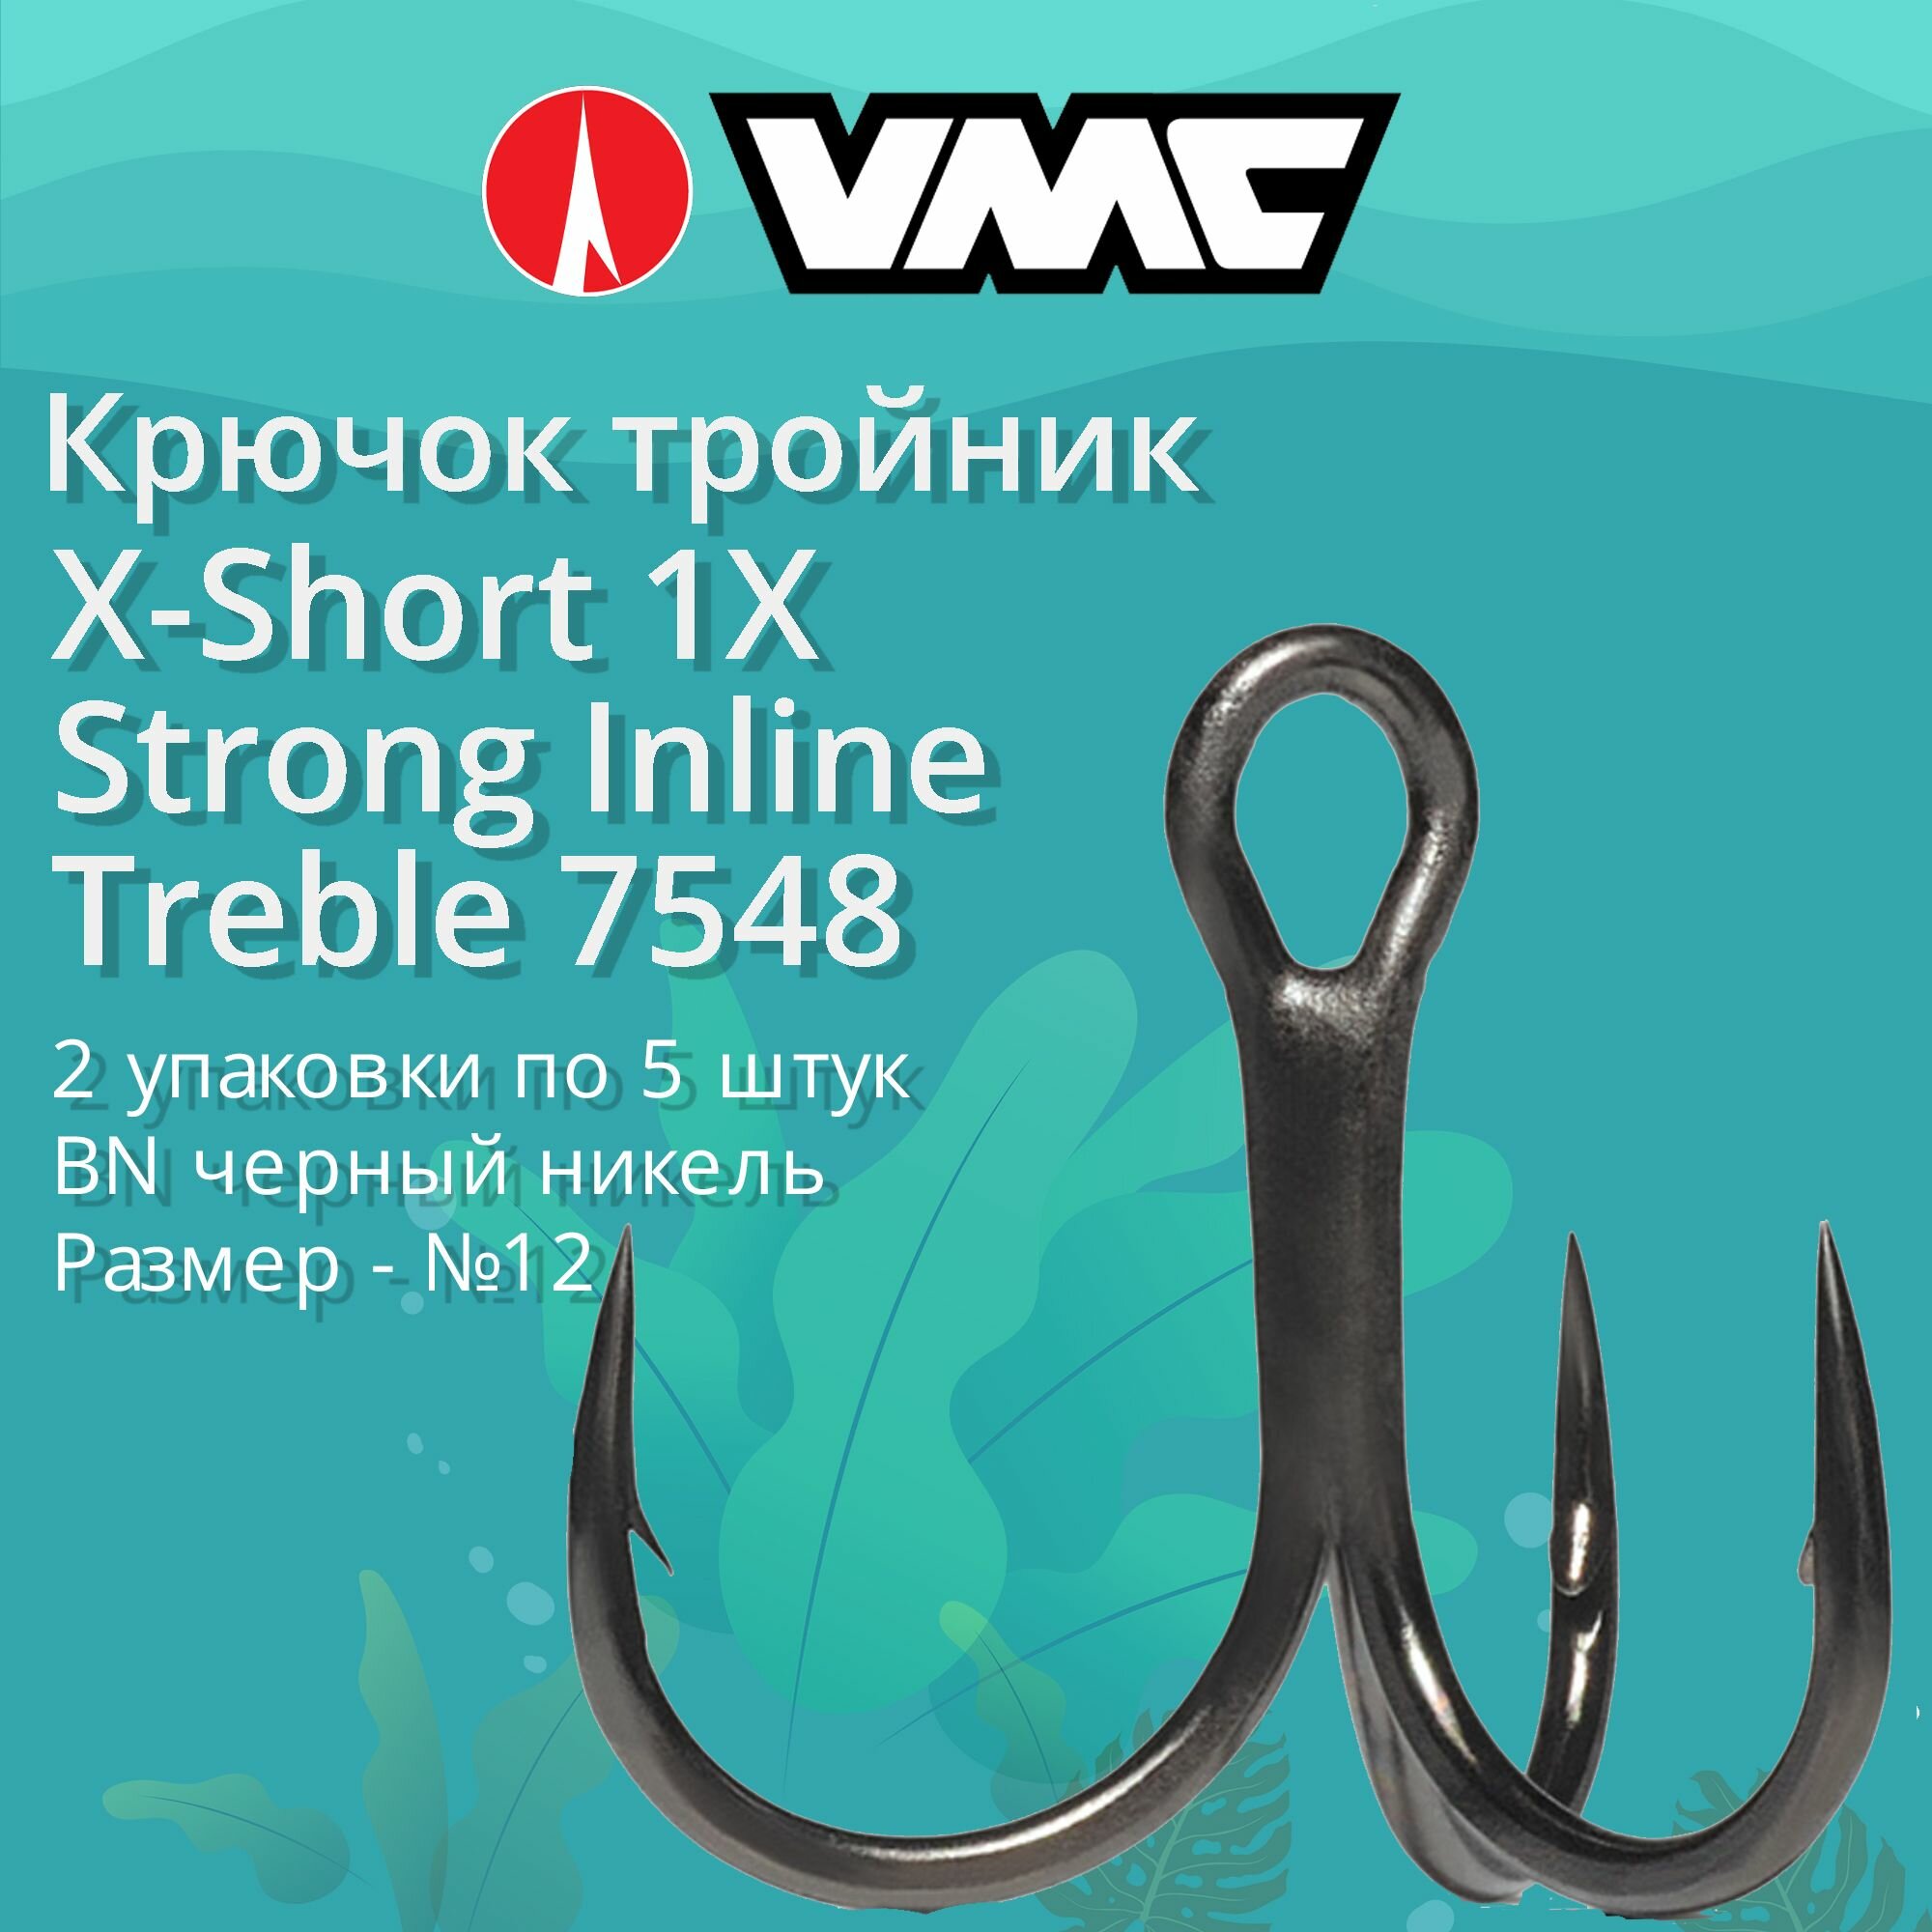 Крючки для рыбалки (тройник) VMC X-Short 1X Strong Inline Treble 7548 BN (черн. никель) №12 (2 упаковки по 5 штук)